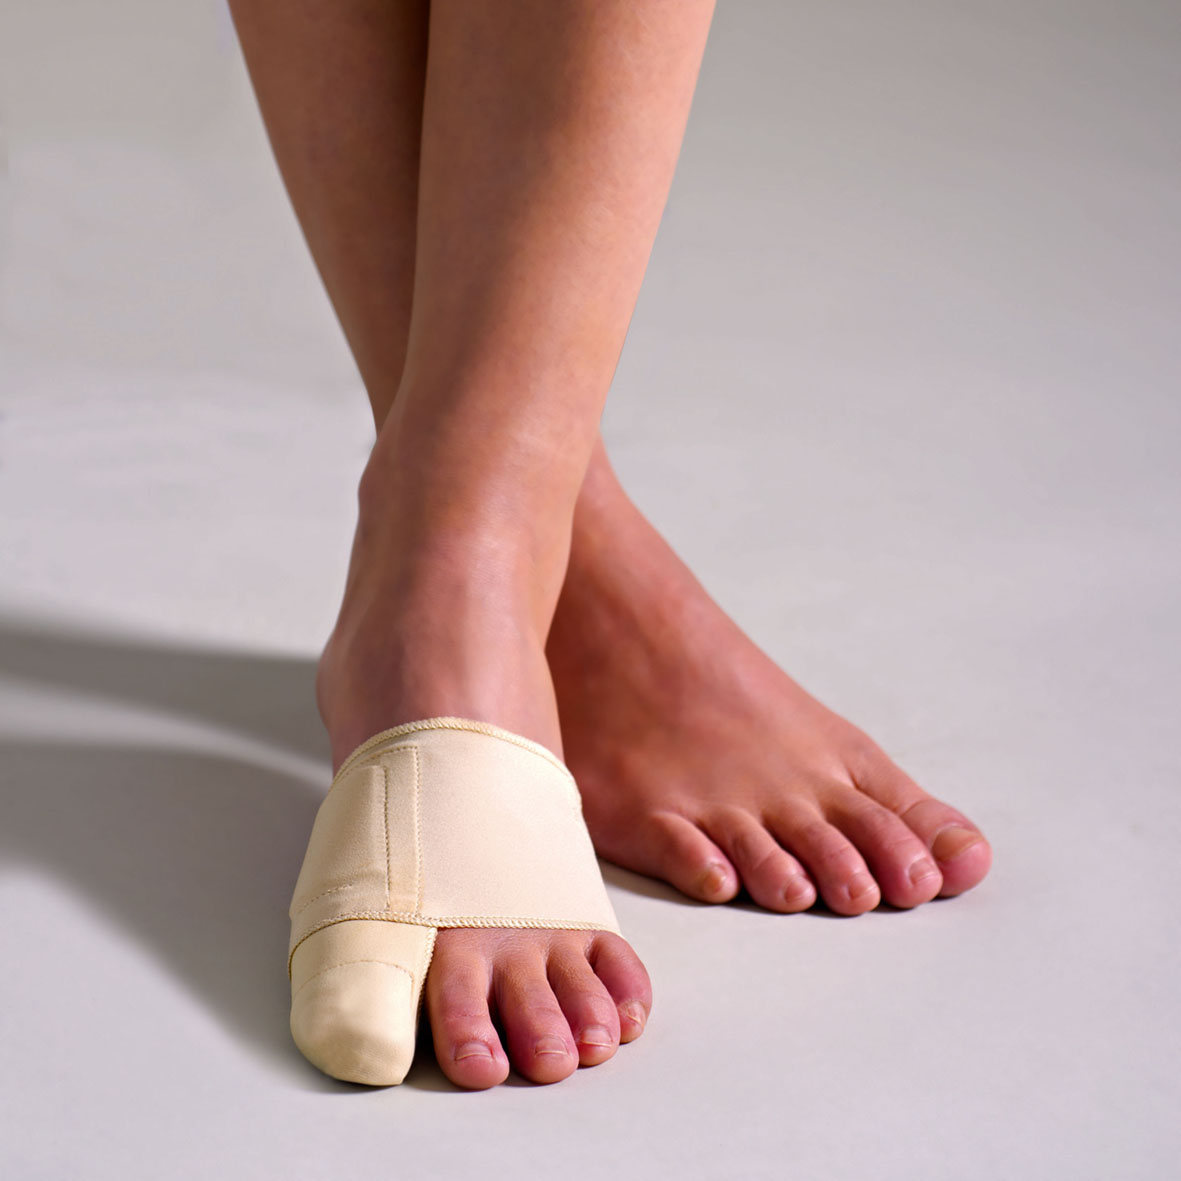 Обработка большого пальца ноги при деформации, скручивании </br>поражении грибковой инфекцией